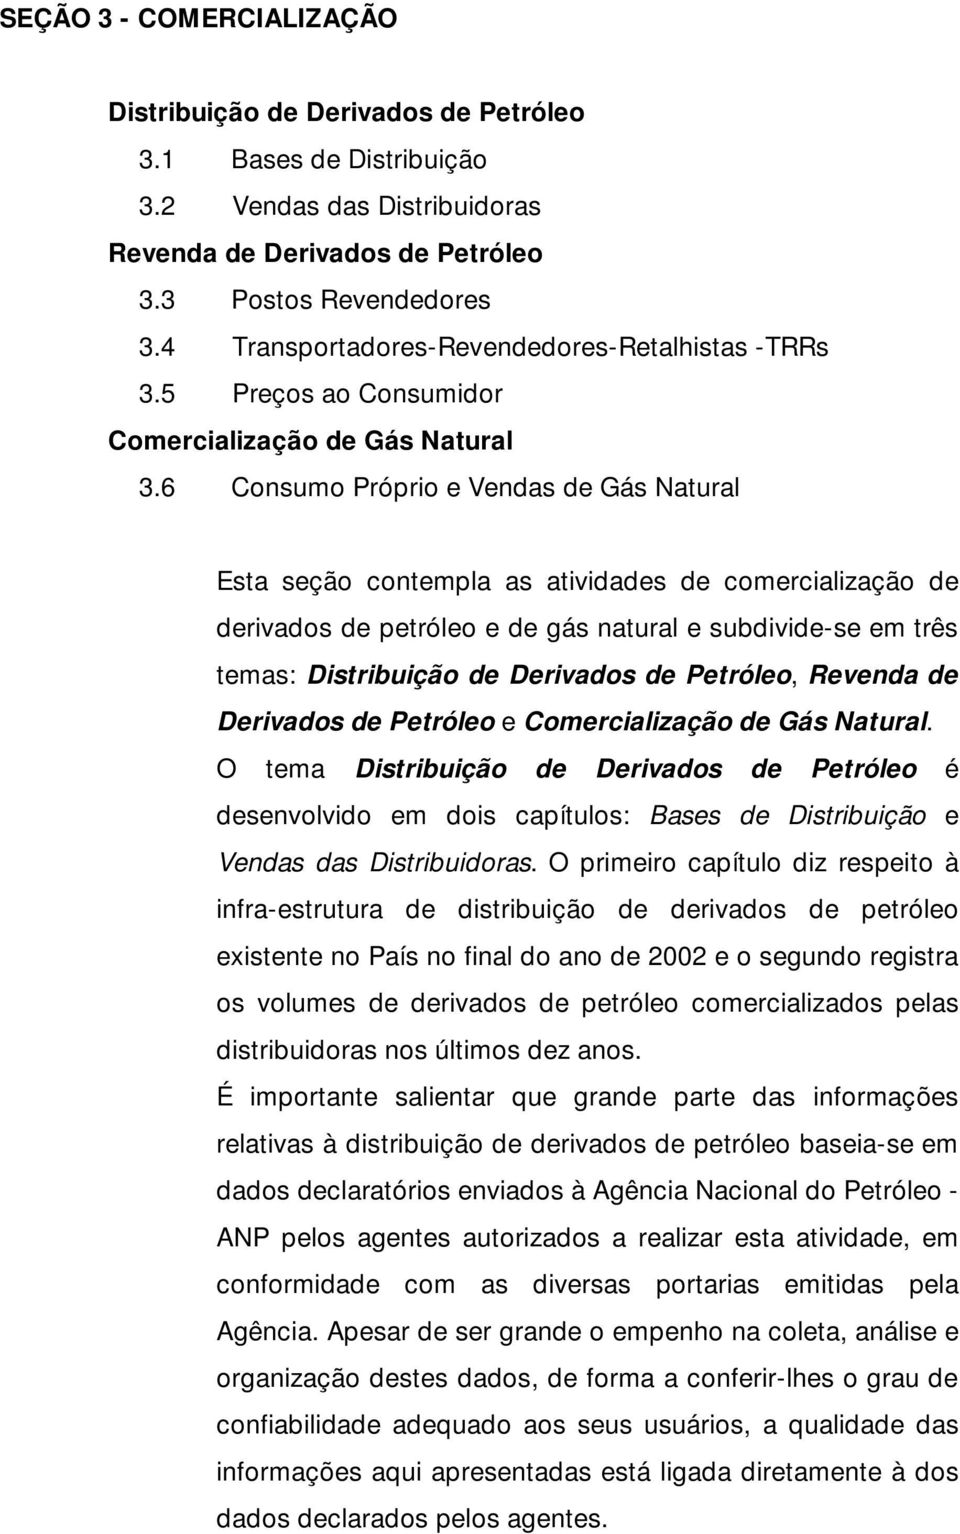 6 Consumo Próprio e Vendas de Gás Natural Esta seção contempla as atividades de comercialização de derivados de petróleo e de gás natural e subdivide-se em três temas: Distribuição de Derivados de